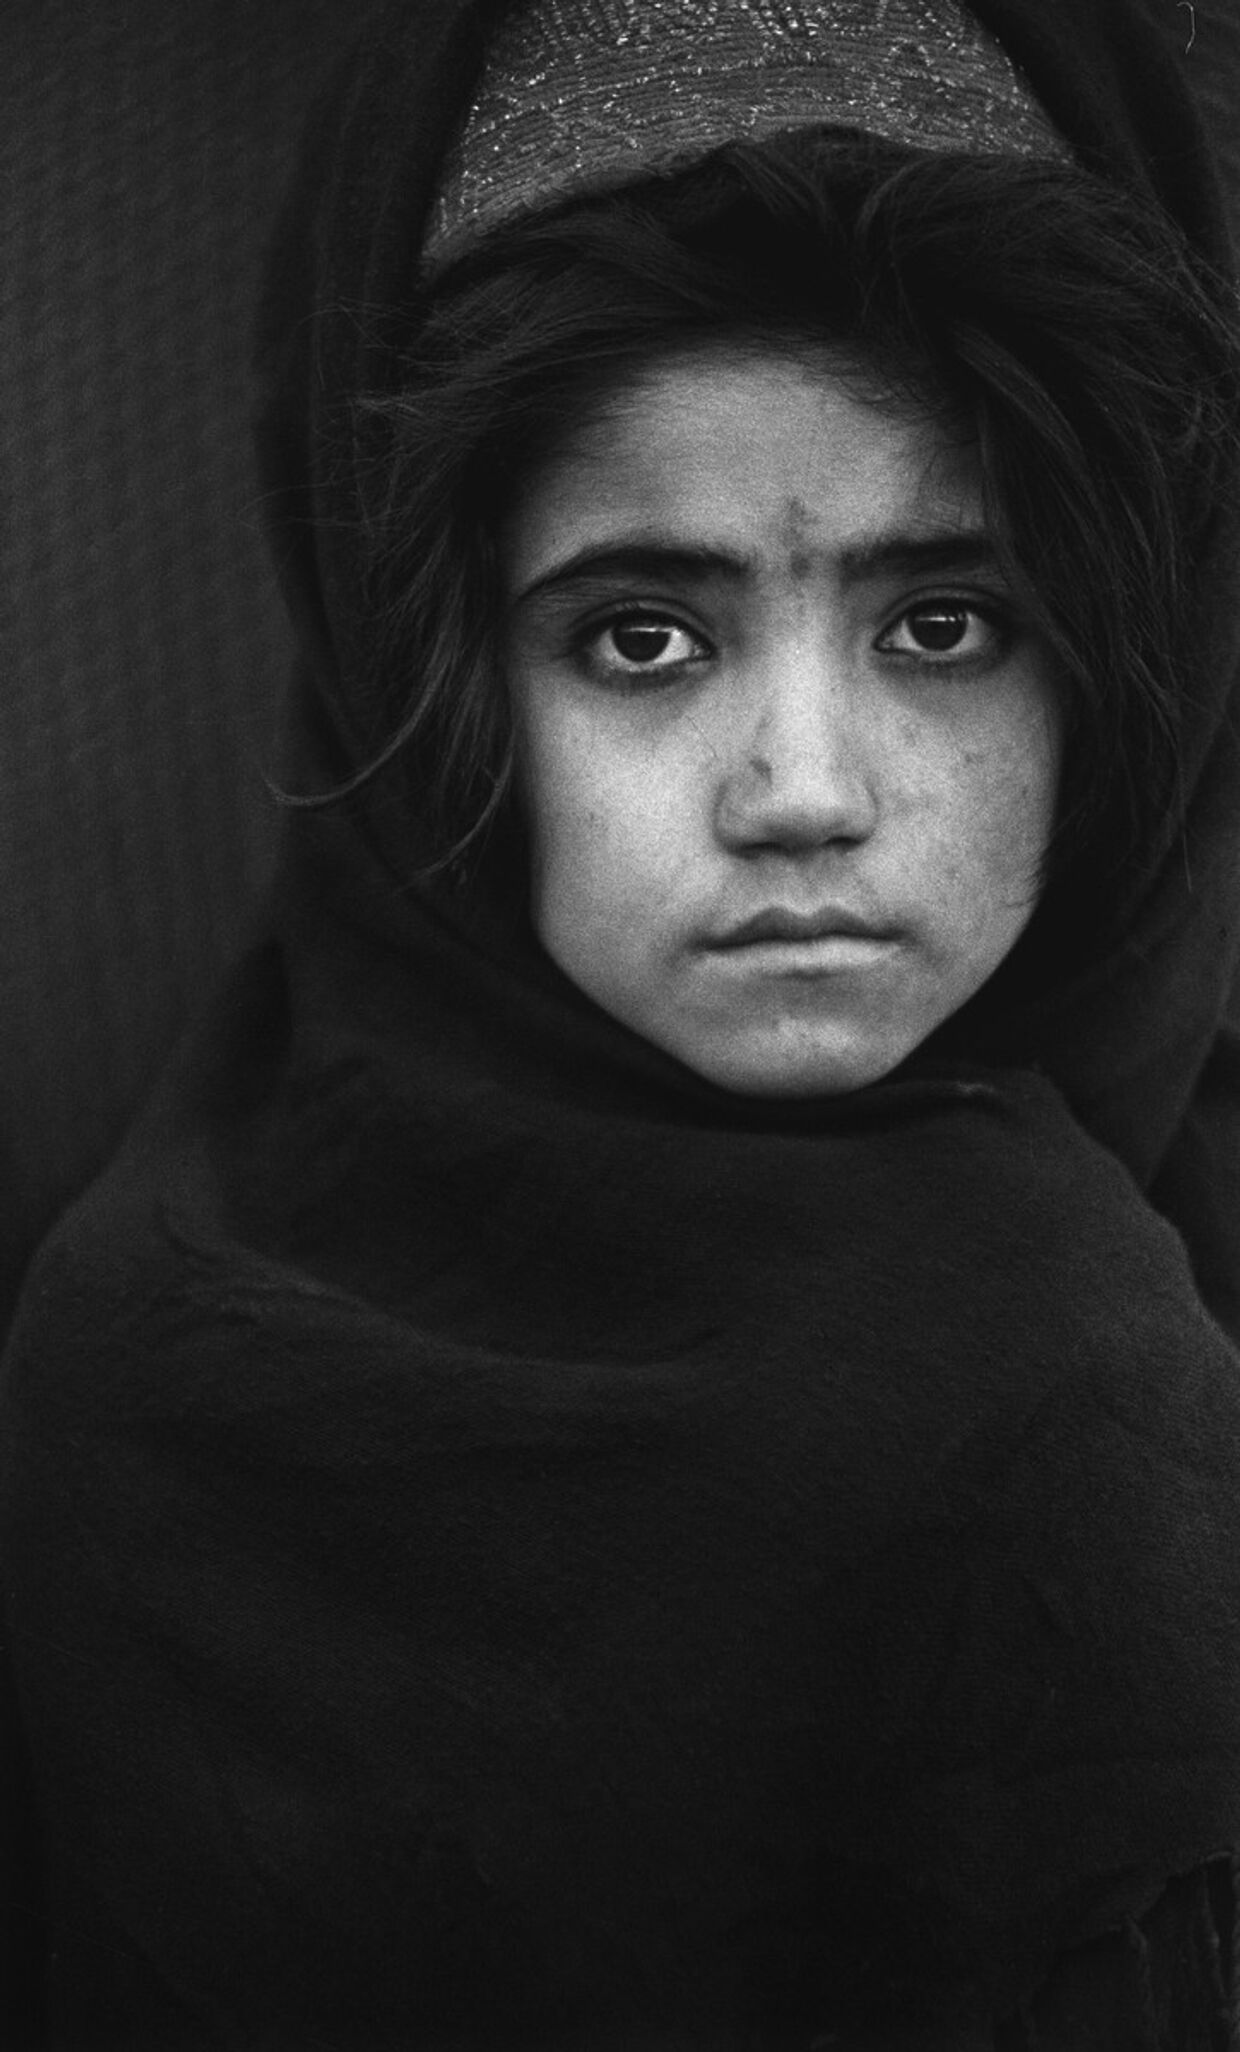 Девочка из Афганистана в лагере для беженцев. Фотография Захры Каземи